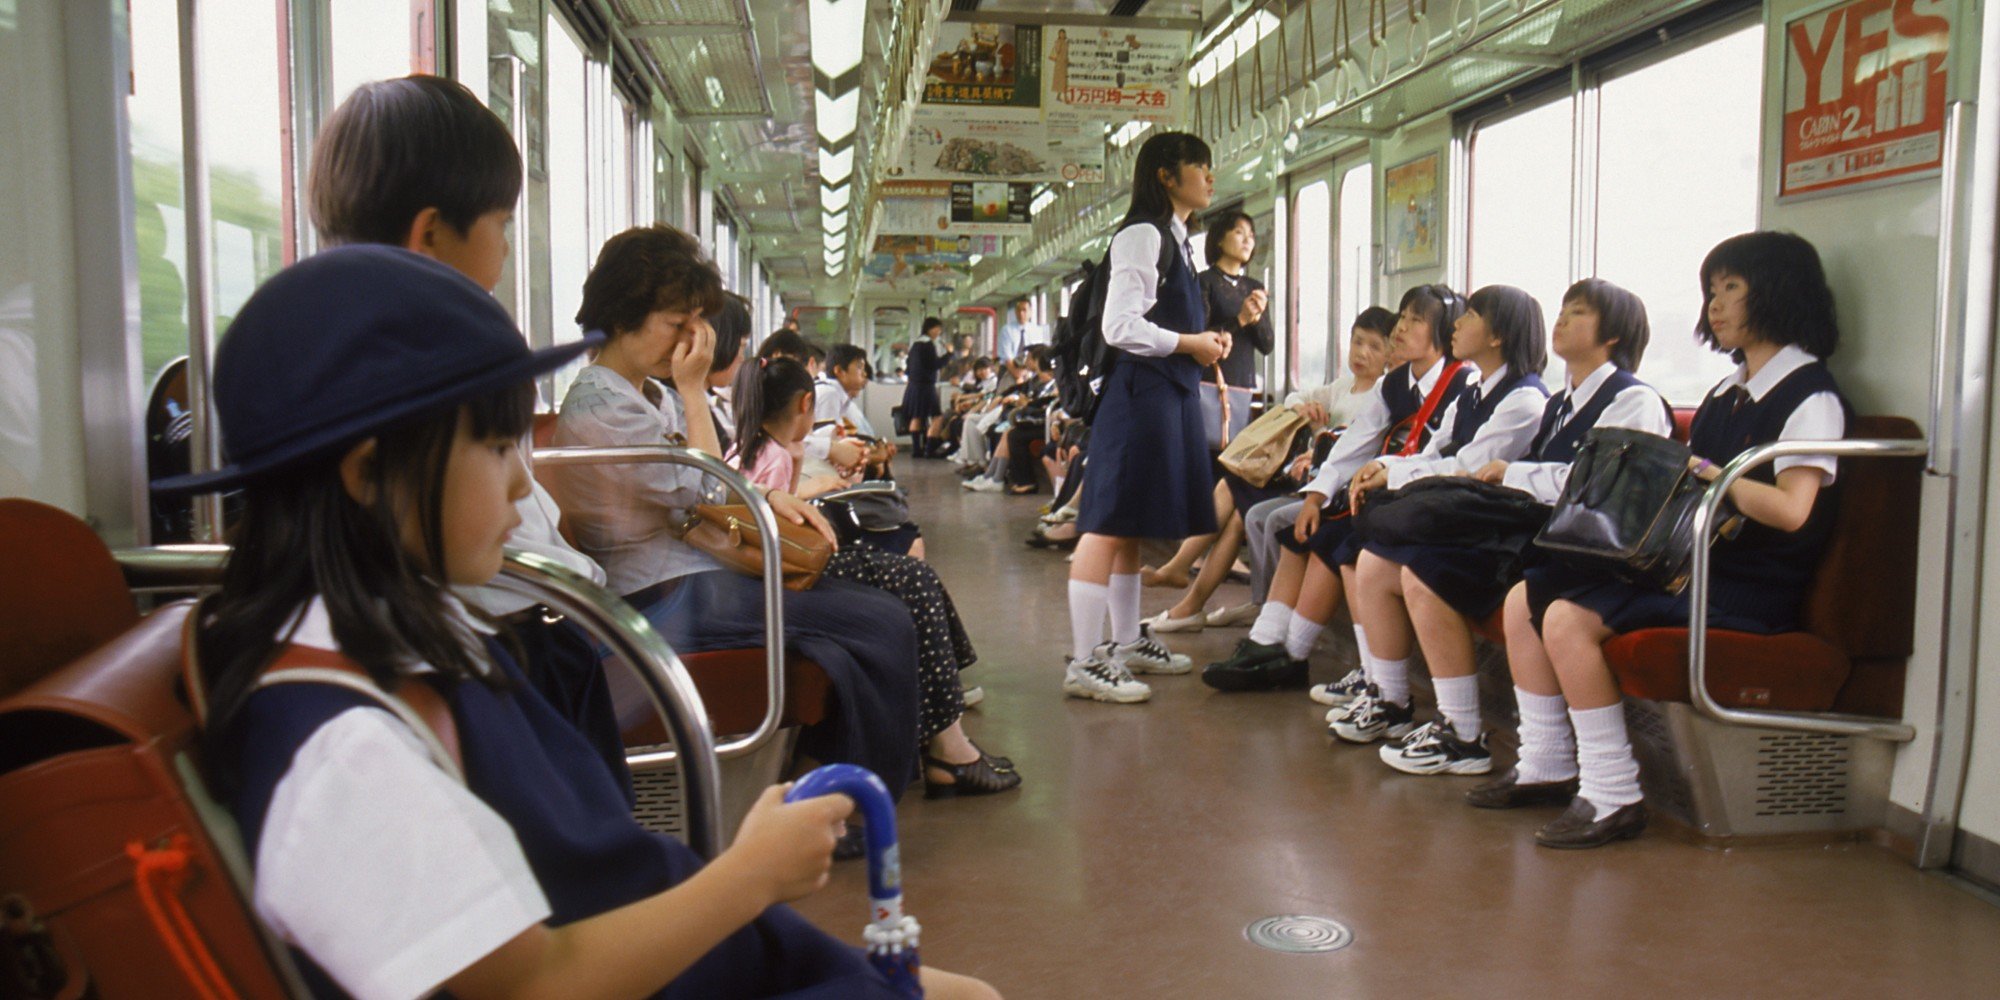 Японская мама автобусе. Вагон метро Токио. Японцы в общественном транспорте. Японские девочки в транспорте. Японские девушки в общественном транспорте.